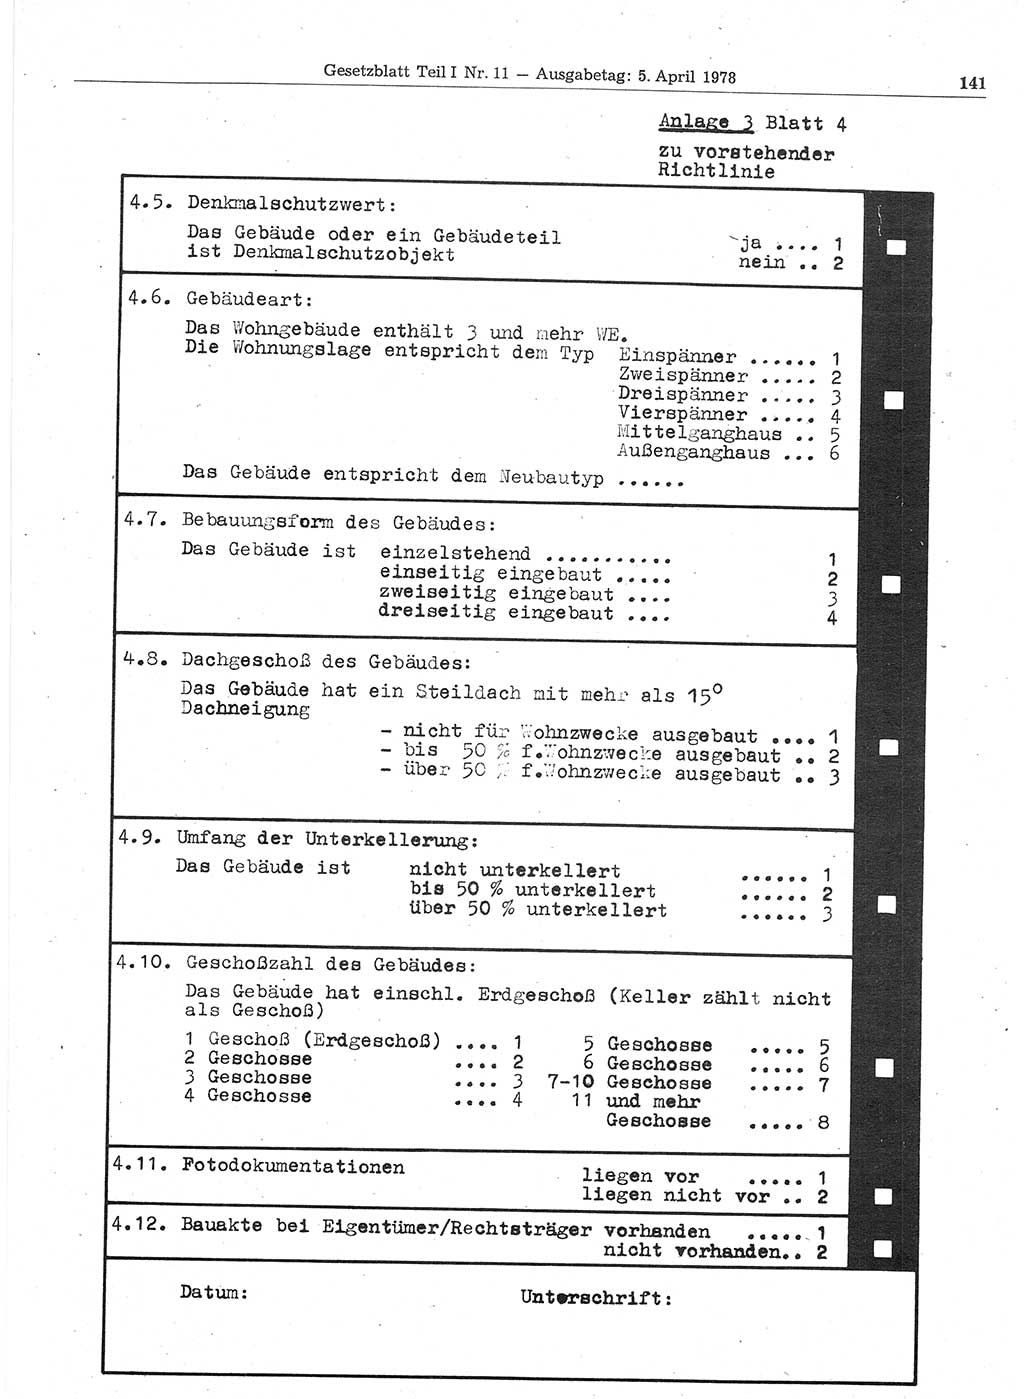 Gesetzblatt (GBl.) der Deutschen Demokratischen Republik (DDR) Teil Ⅰ 1978, Seite 141 (GBl. DDR Ⅰ 1978, S. 141)